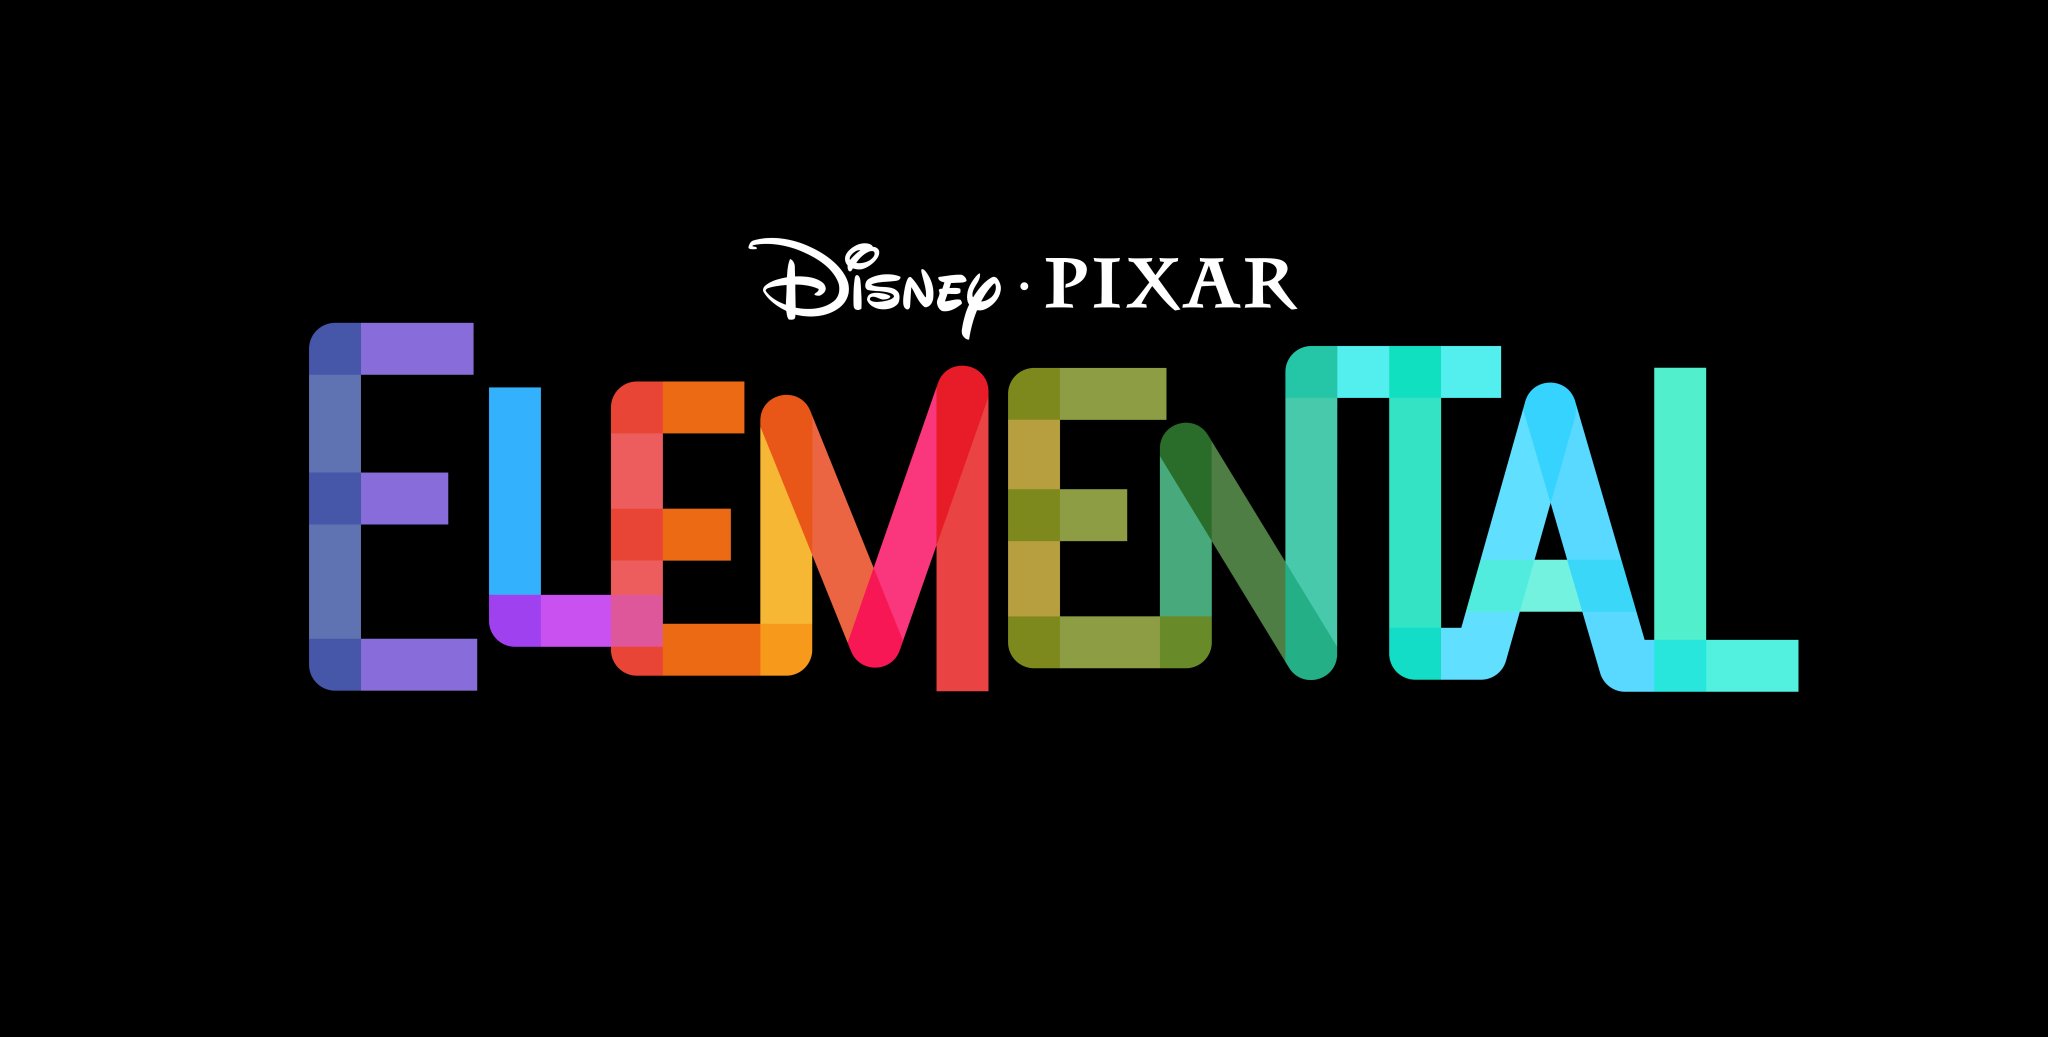 Disney dan Pixar Garap Animasi Baru ‘Elemental’, Ini Tanggal Rilisnya